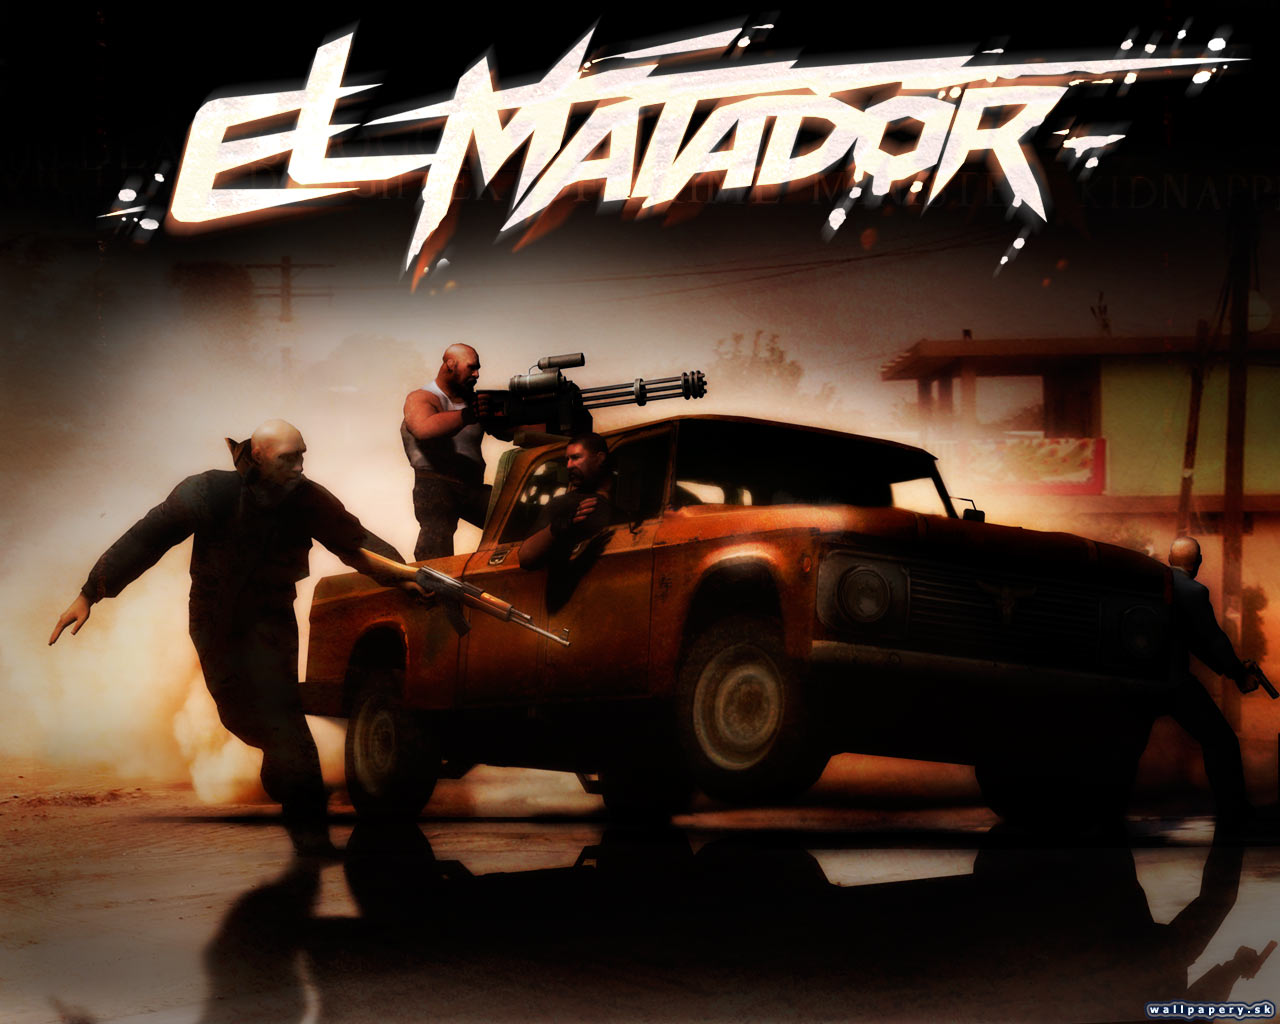 El Matador - wallpaper 14